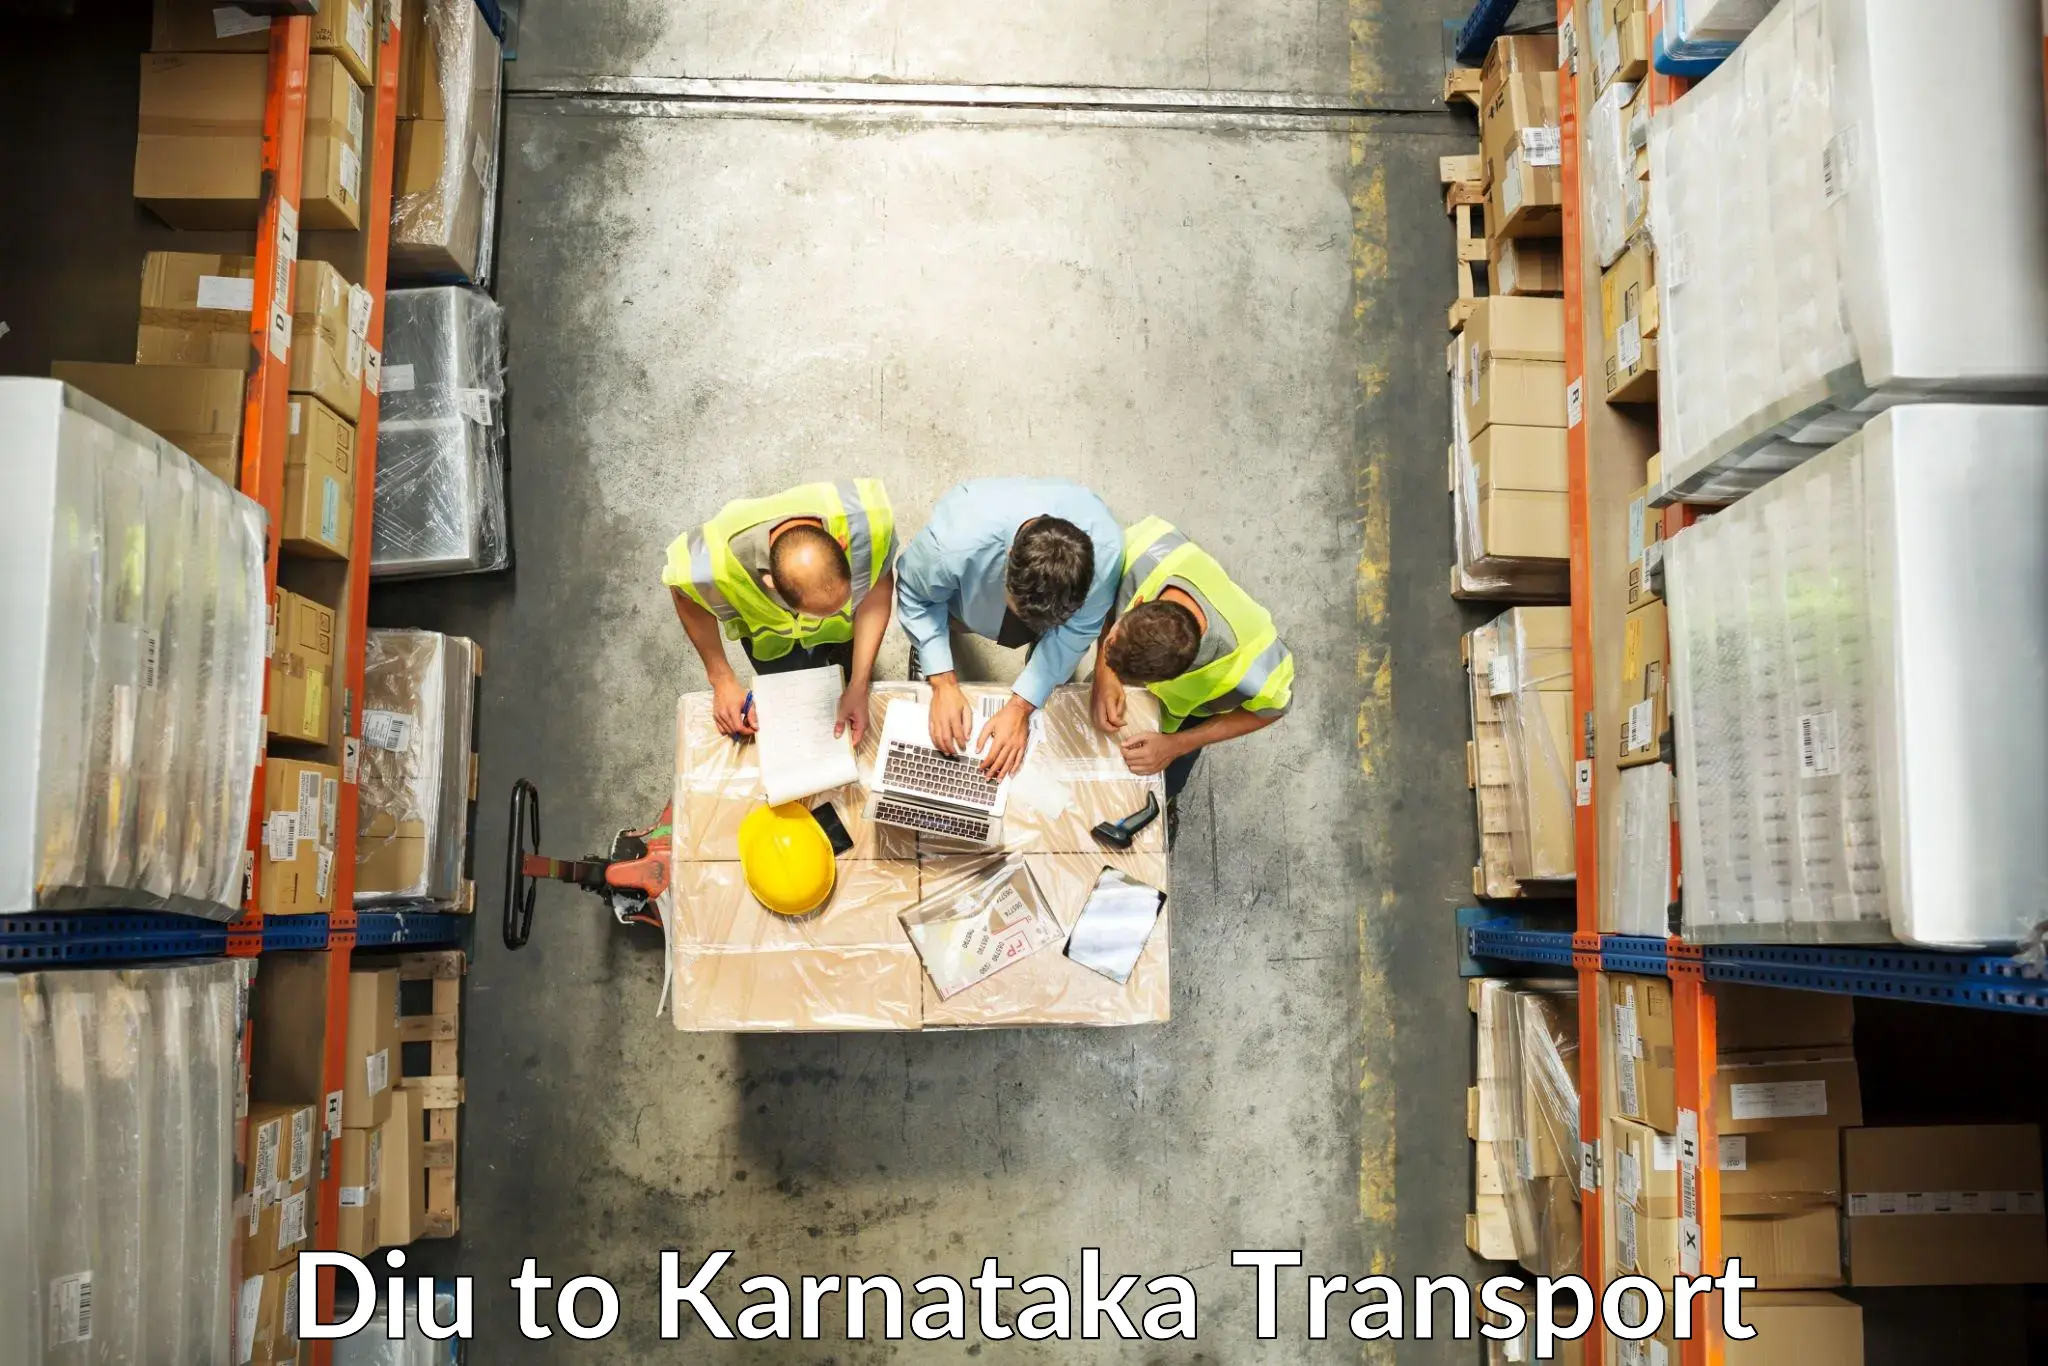 Furniture transport service Diu to Karnataka